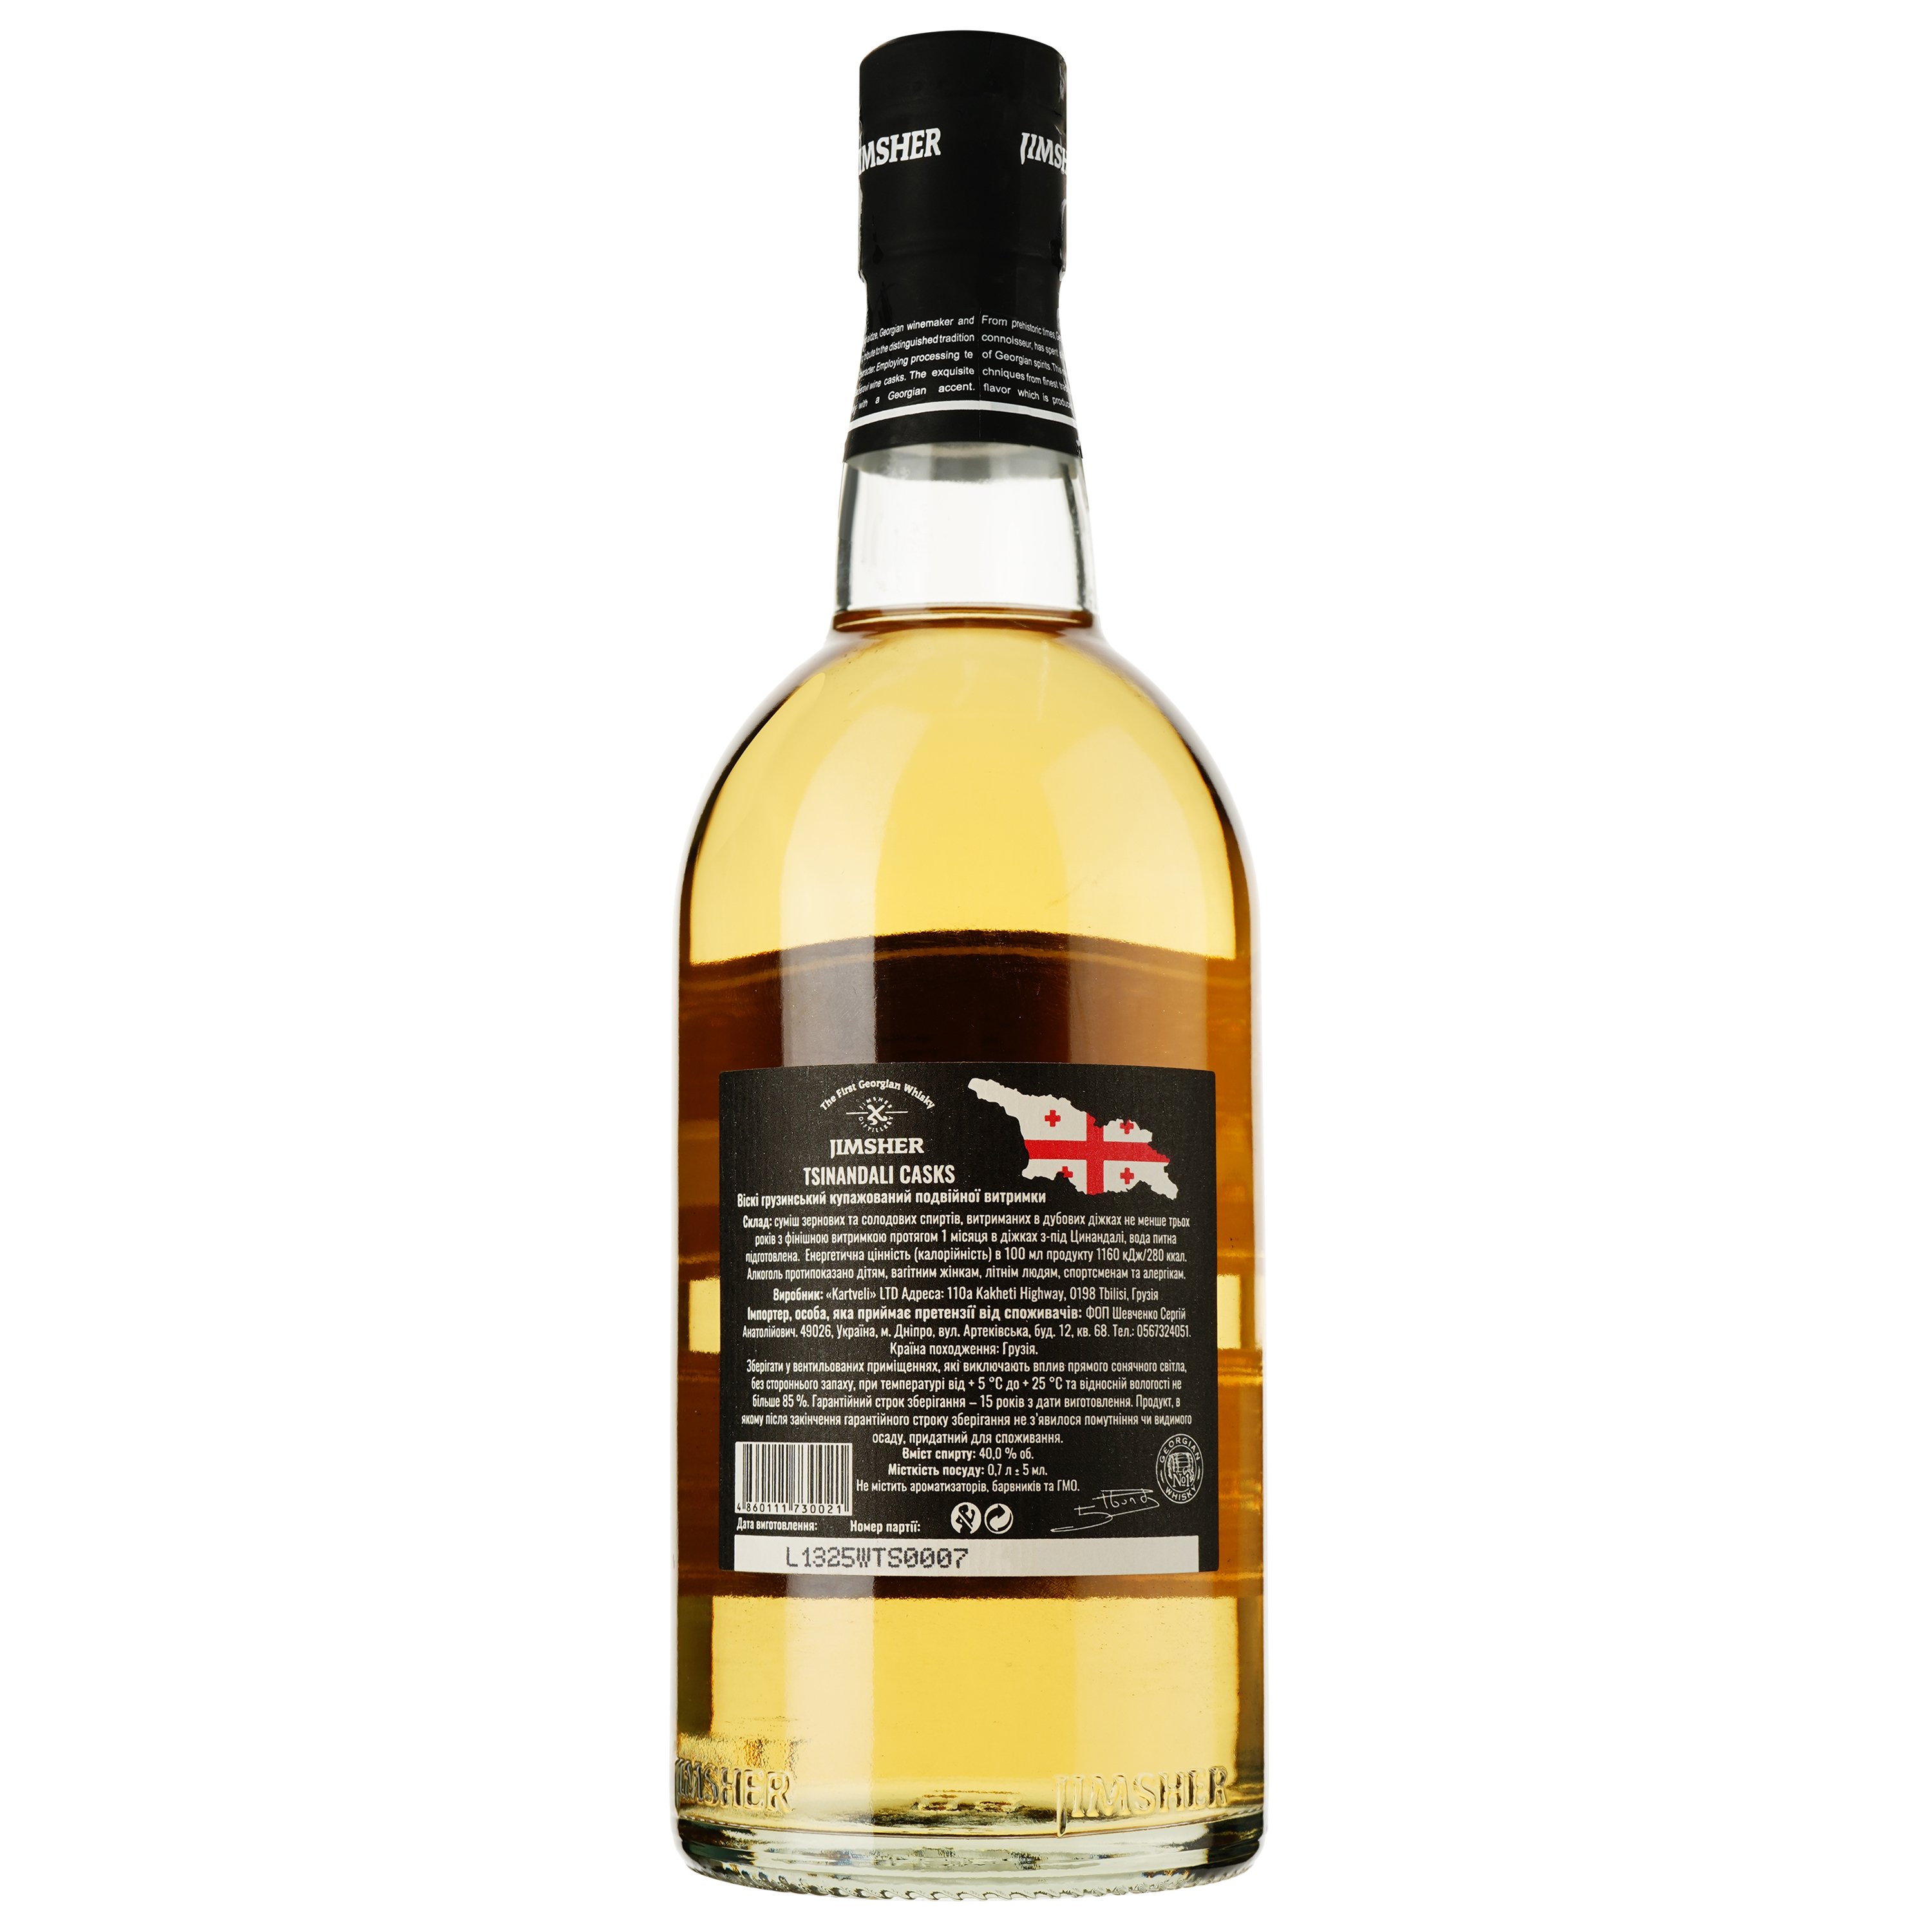 Віскі Jimsher Tsinandali Casks Blended Georgian Whisky, 40%, 0.7 л - фото 2